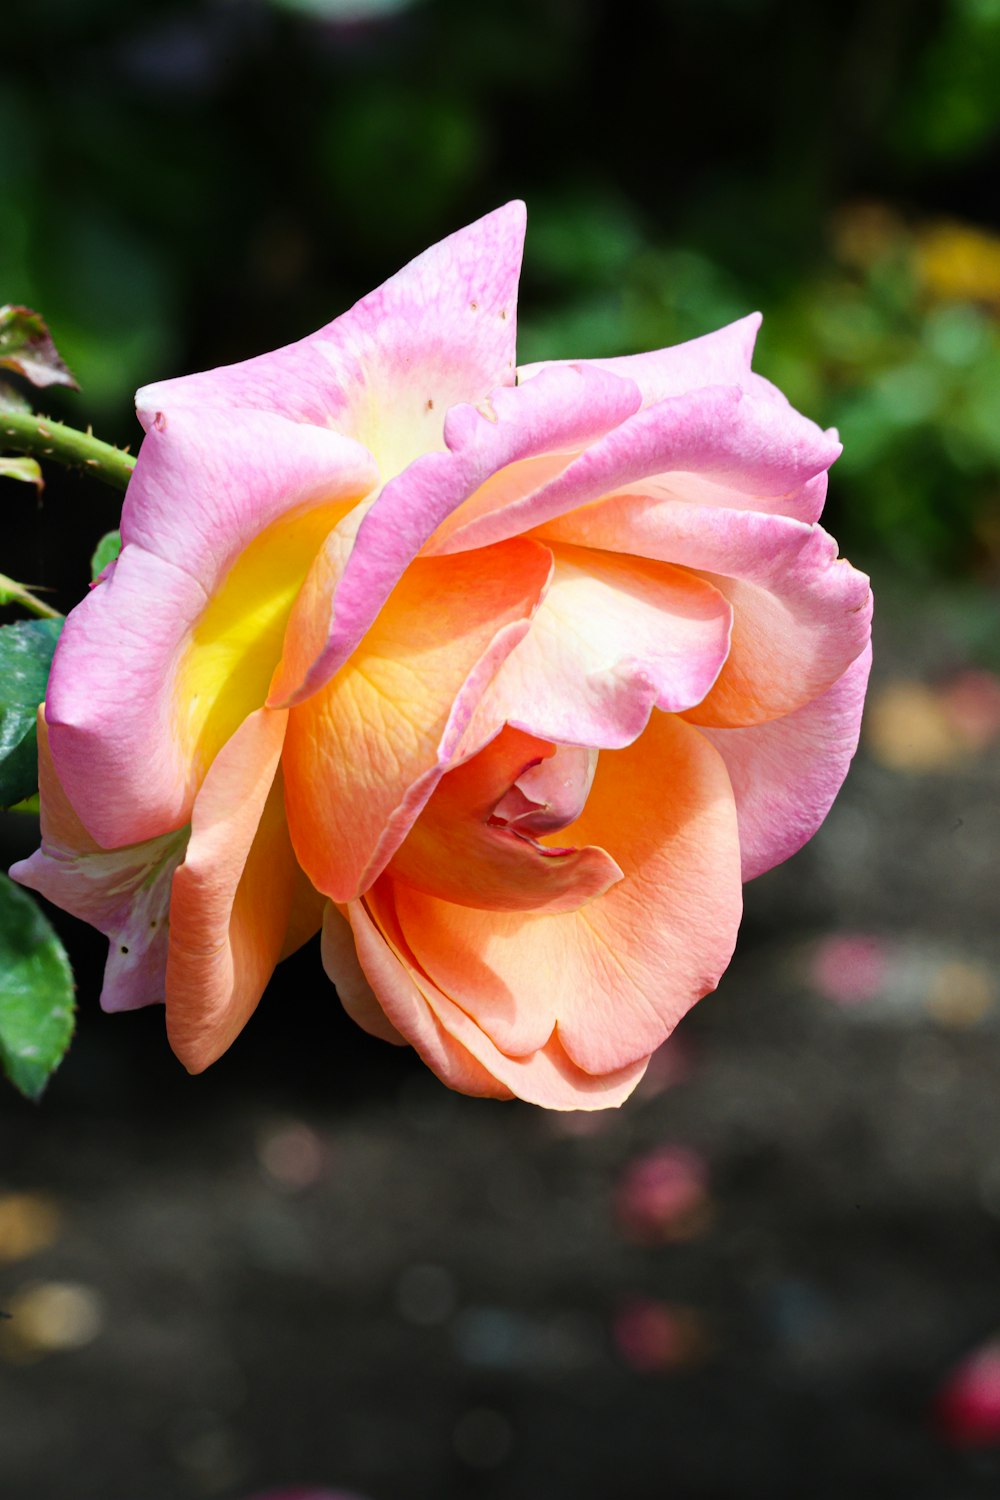 Une rose rose et jaune s’épanouit dans un jardin